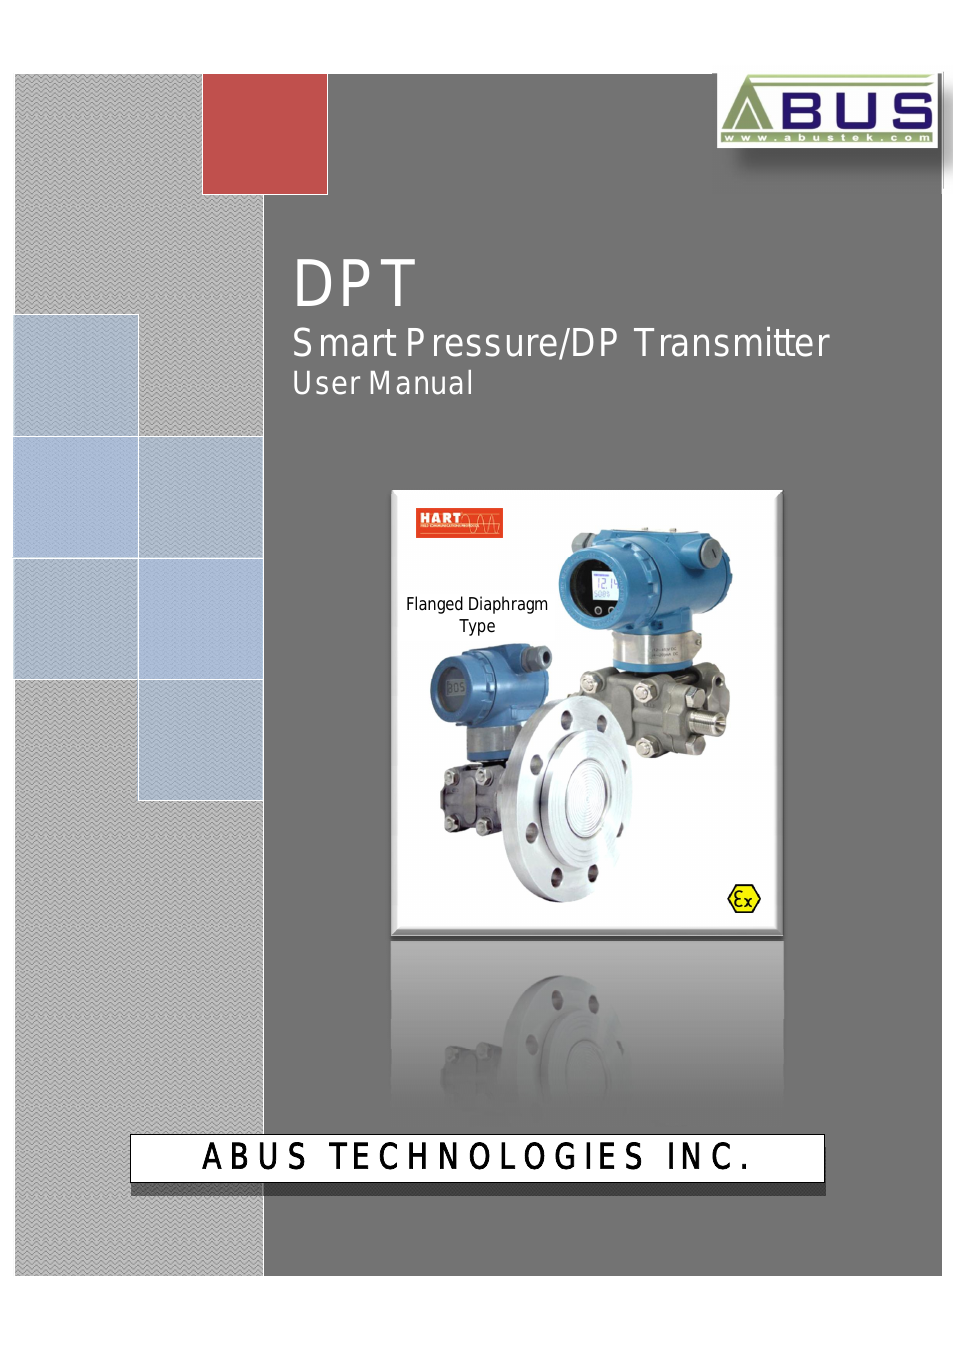 DP Series Smart Pressure Transmitter